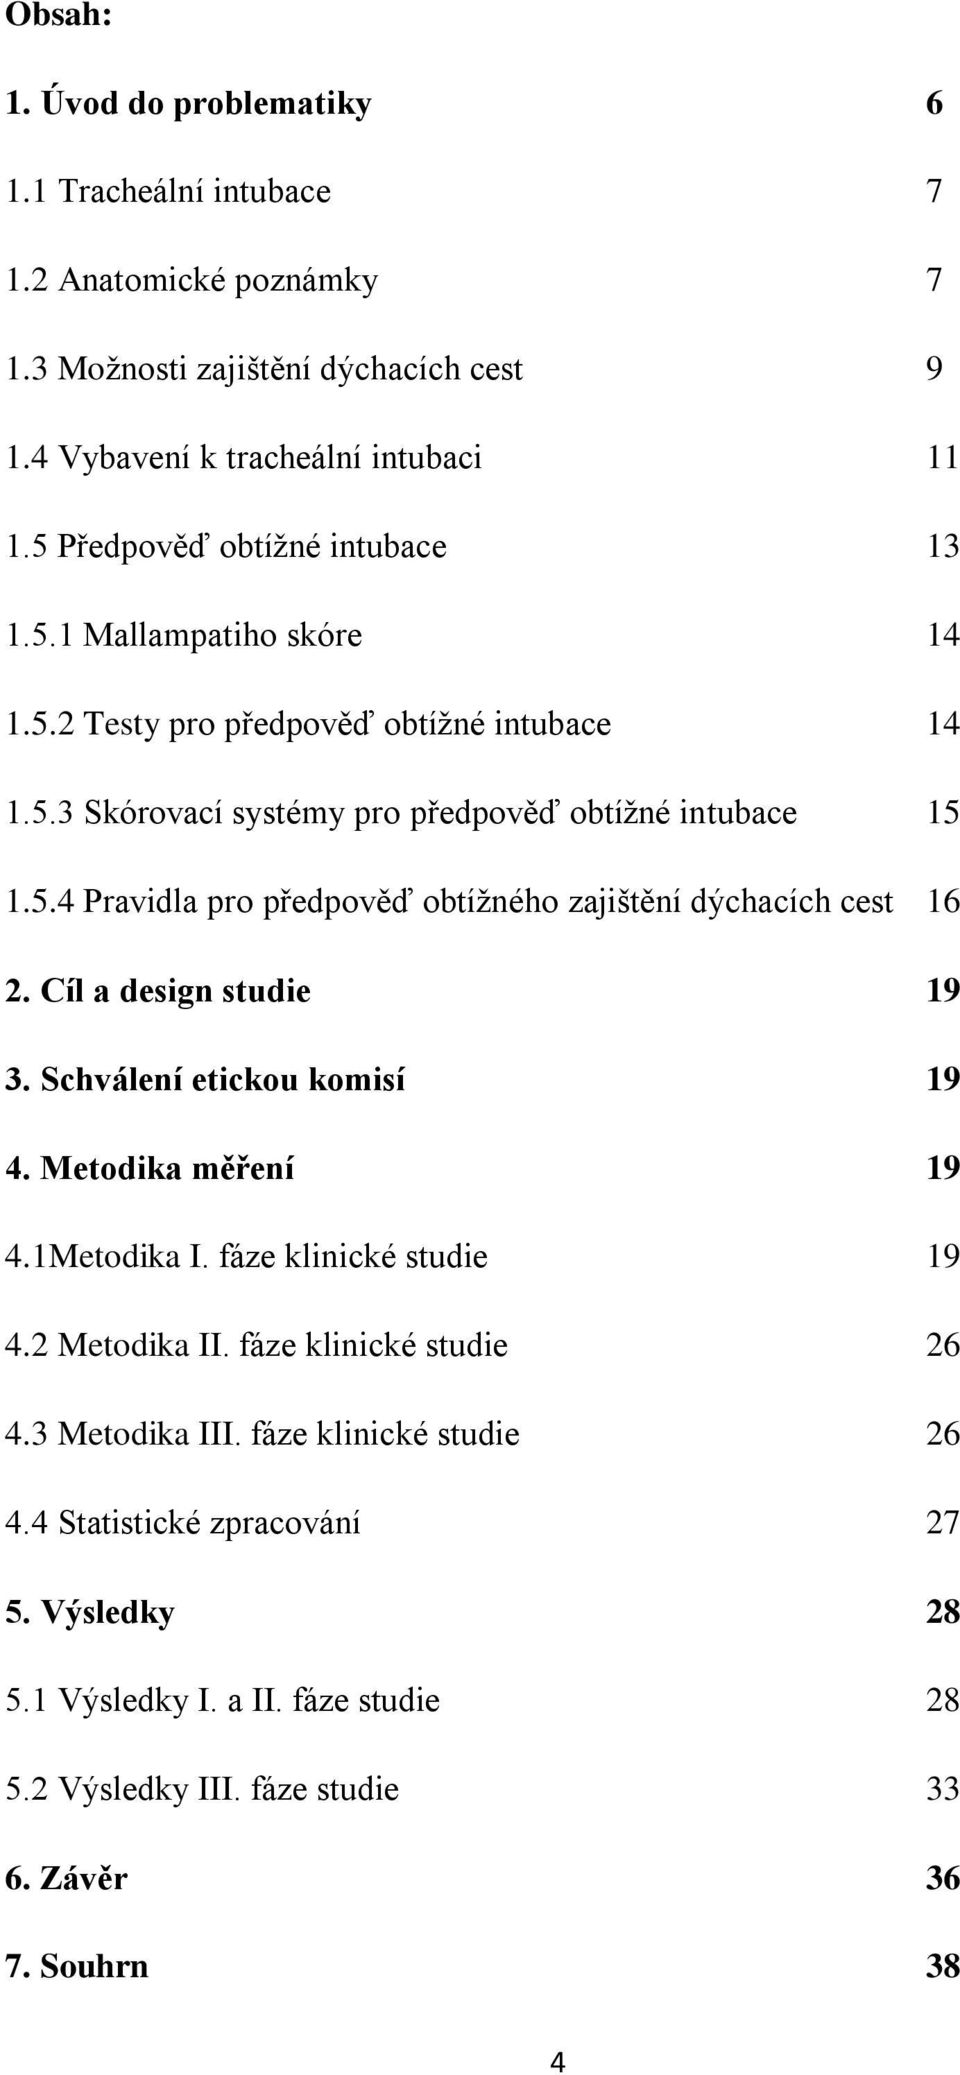 Cíl a design studie 19 3. Schválení etickou komisí 19 4. Metodika měření 19 4.1Metodika I. fáze klinické studie 19 4.2 Metodika II. fáze klinické studie 26 4.3 Metodika III.